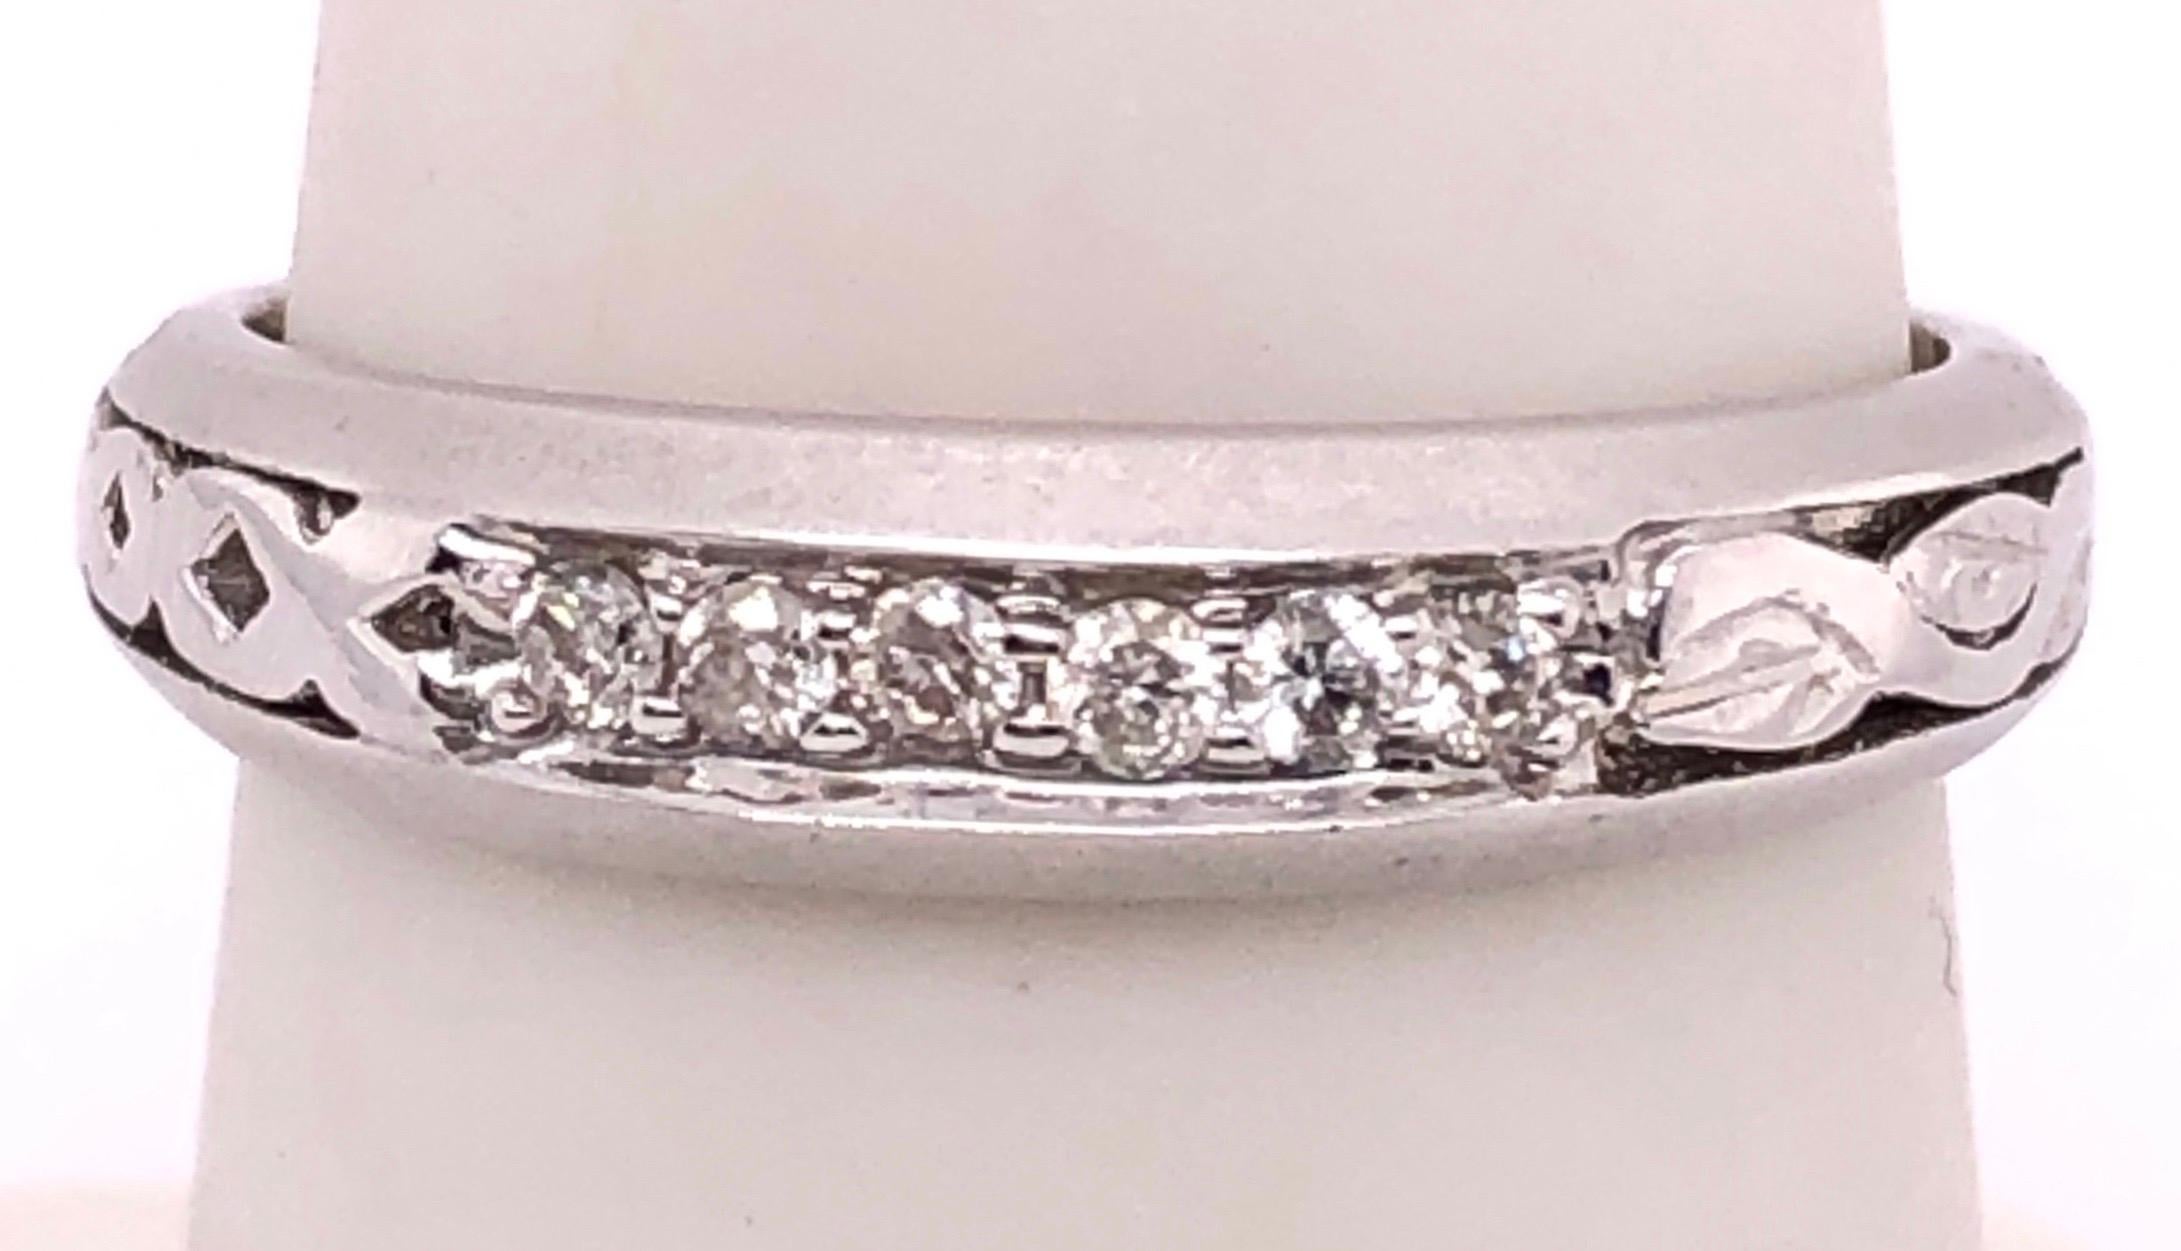 18 Karat Weißgold Fashion Ring mit Diamanten.
Größe 6.5
3.1 Gramm Gesamtgewicht.